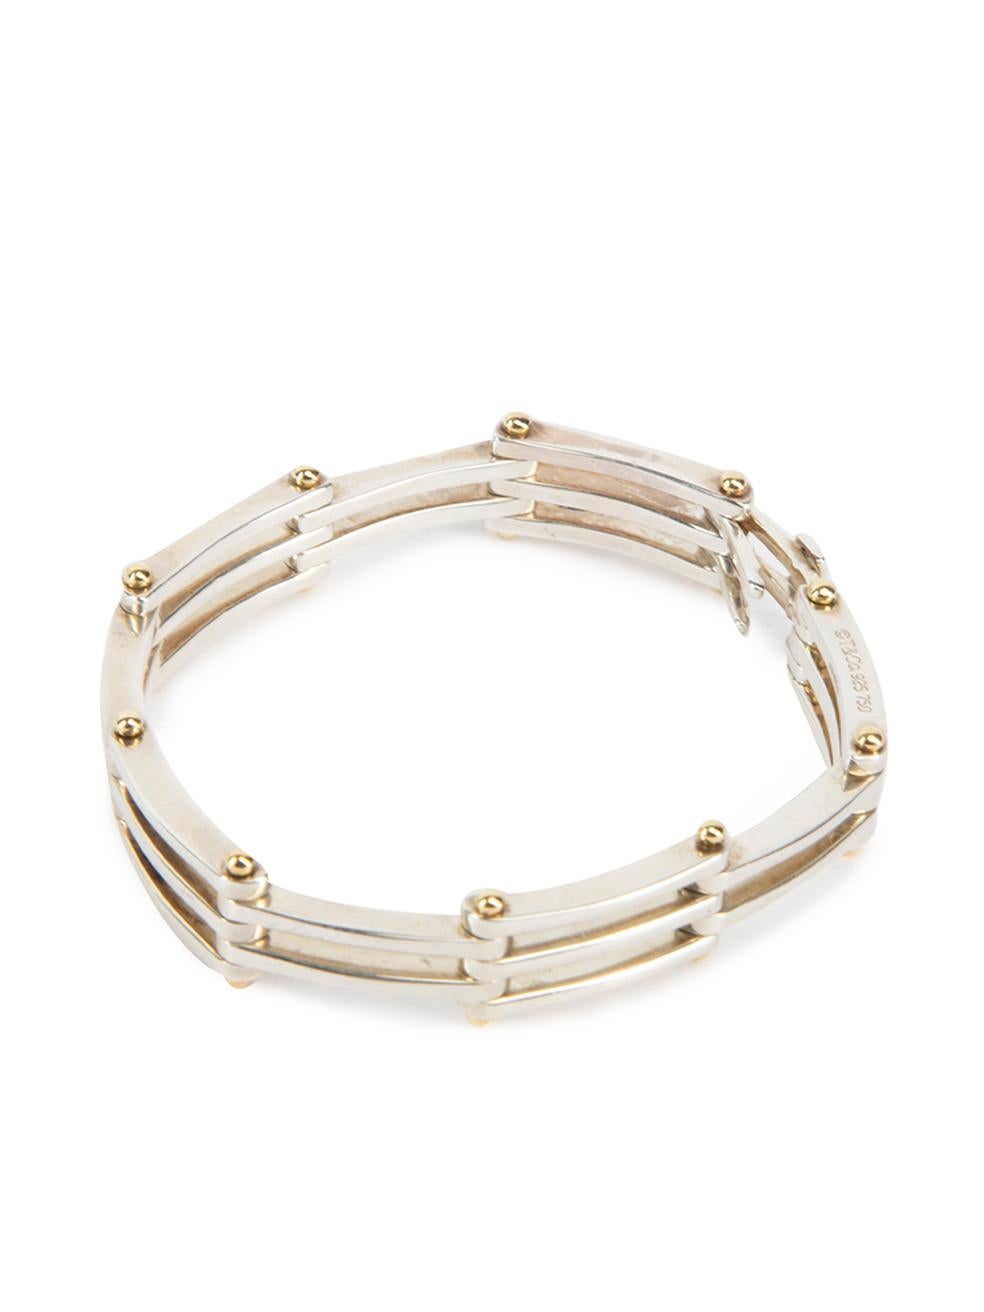 silver gate bracelet women's